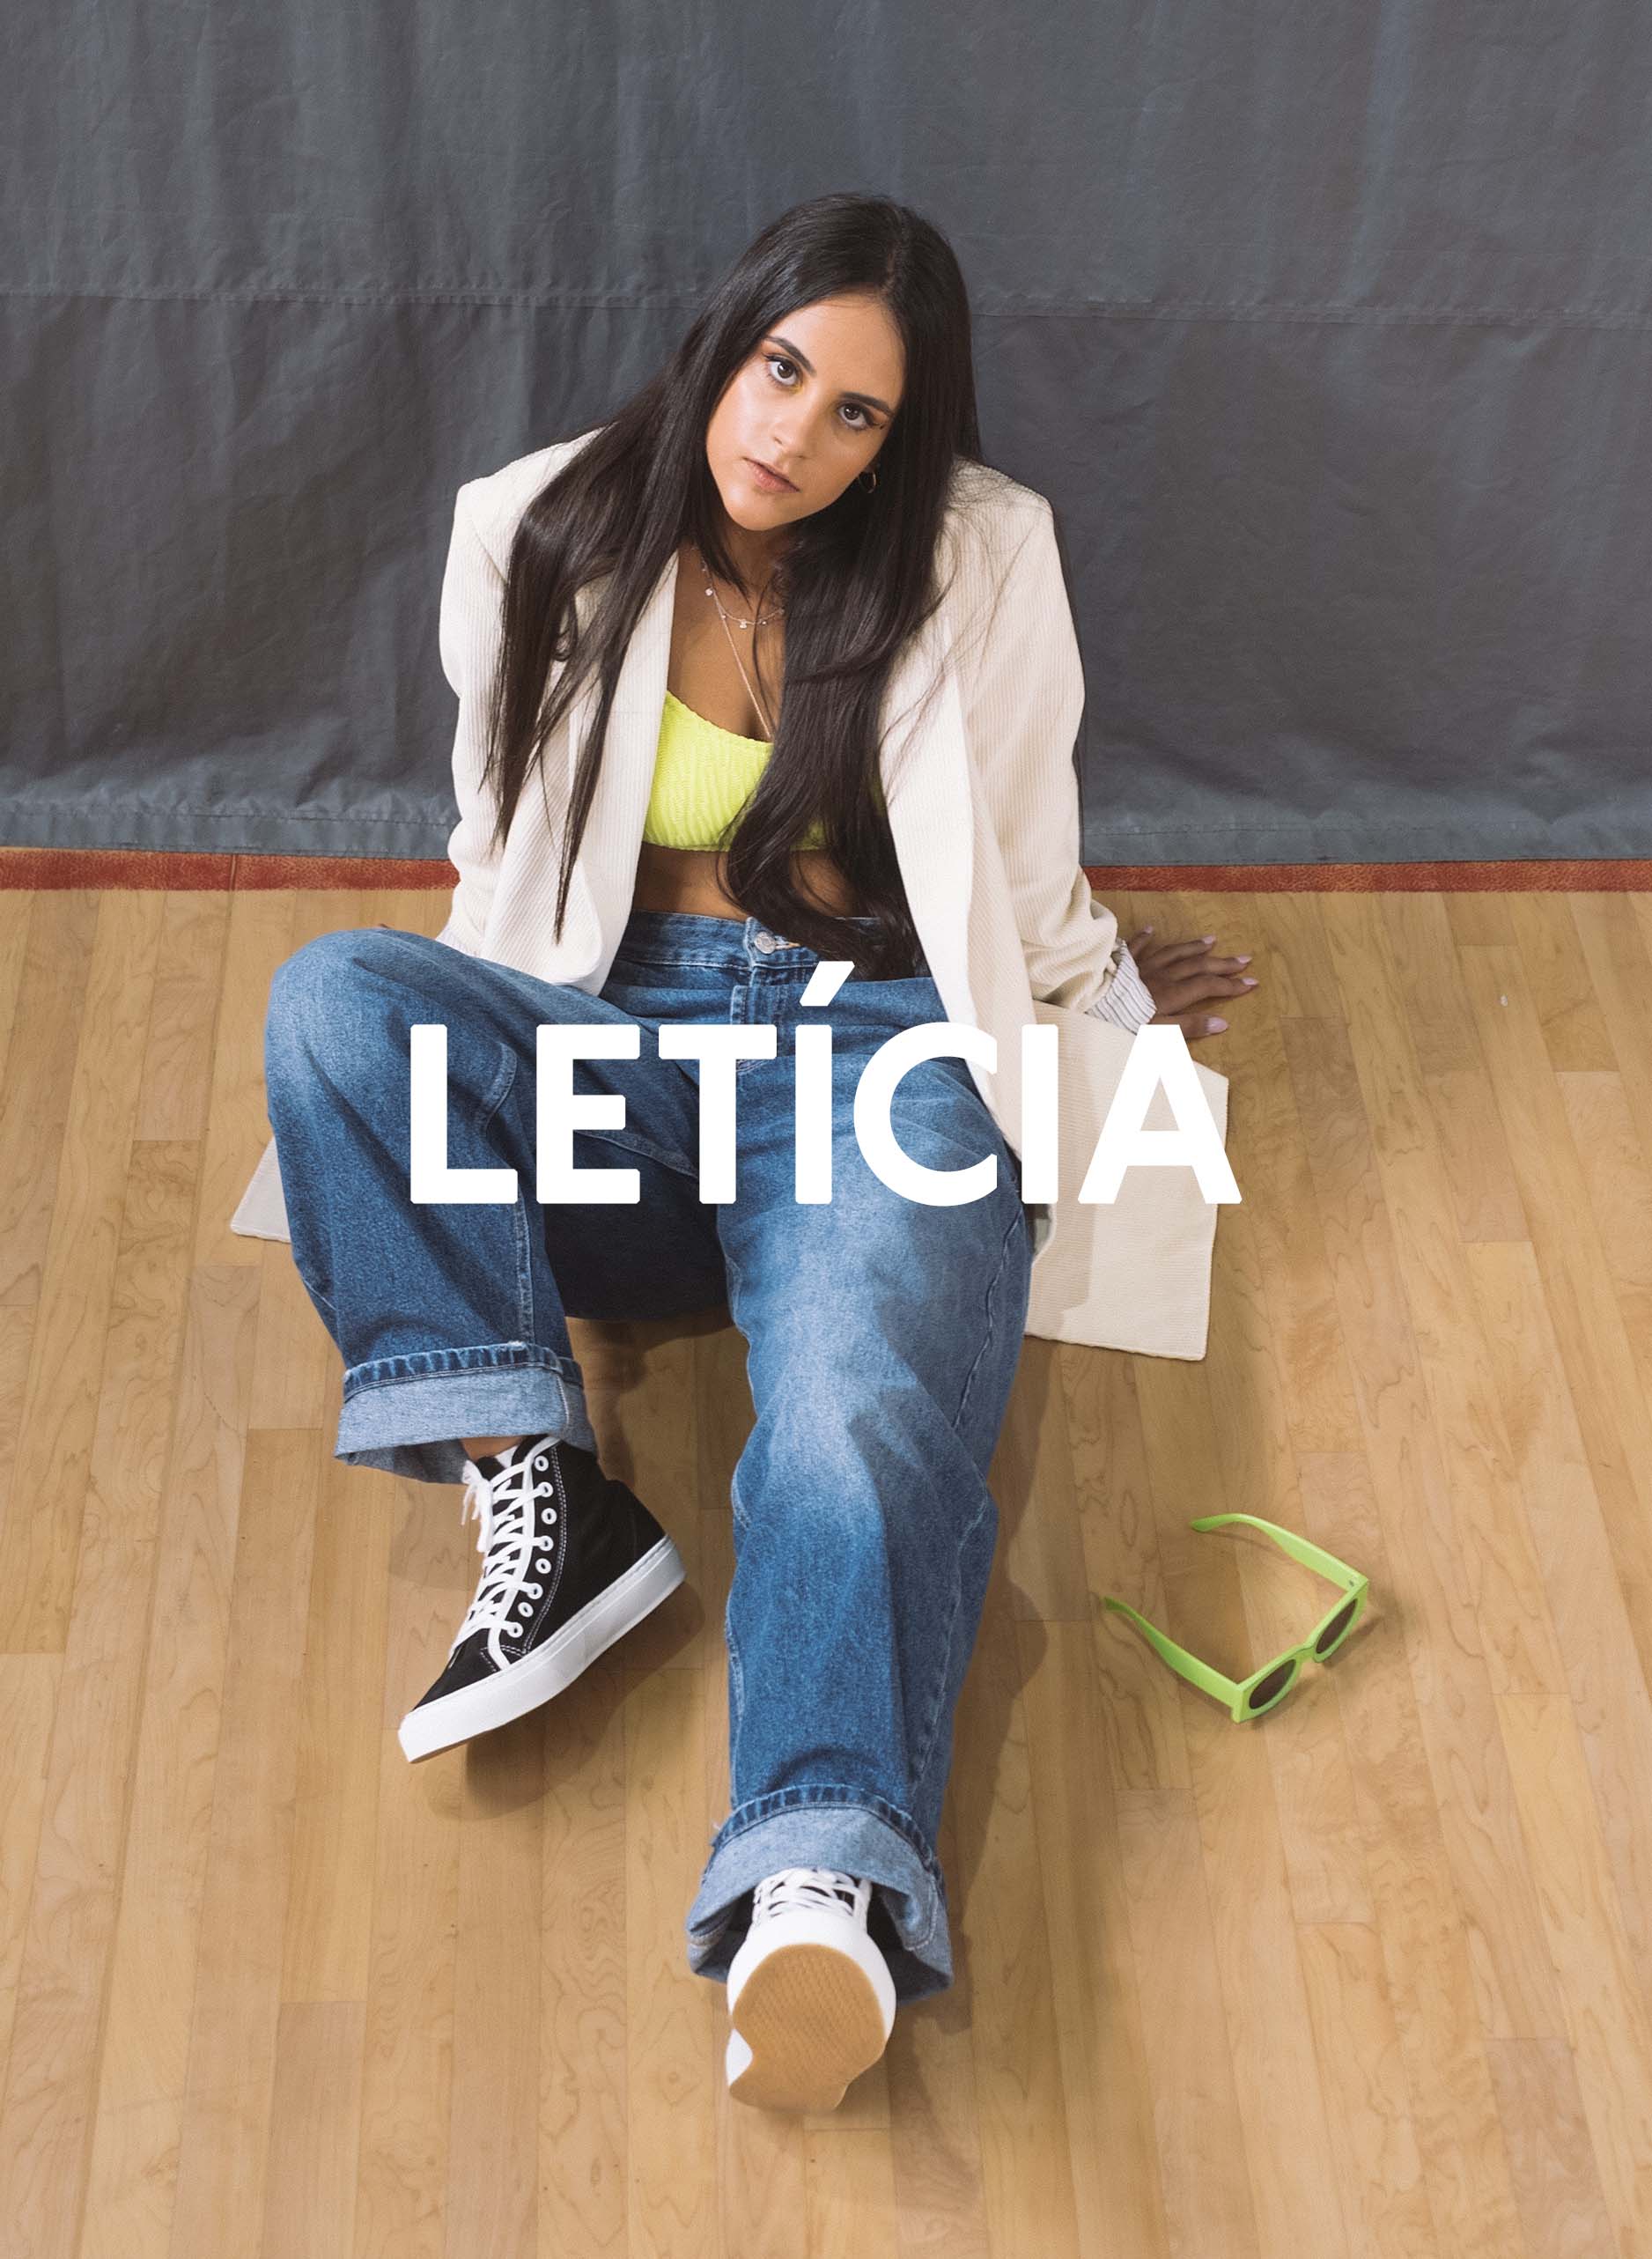 Leticia sentada en el suelo de un gimnasio mirando directamente a la cámara, Diverge sneakers, promoviendo el impacto social y el calzado personalizado a través del proyecto Imagine. 